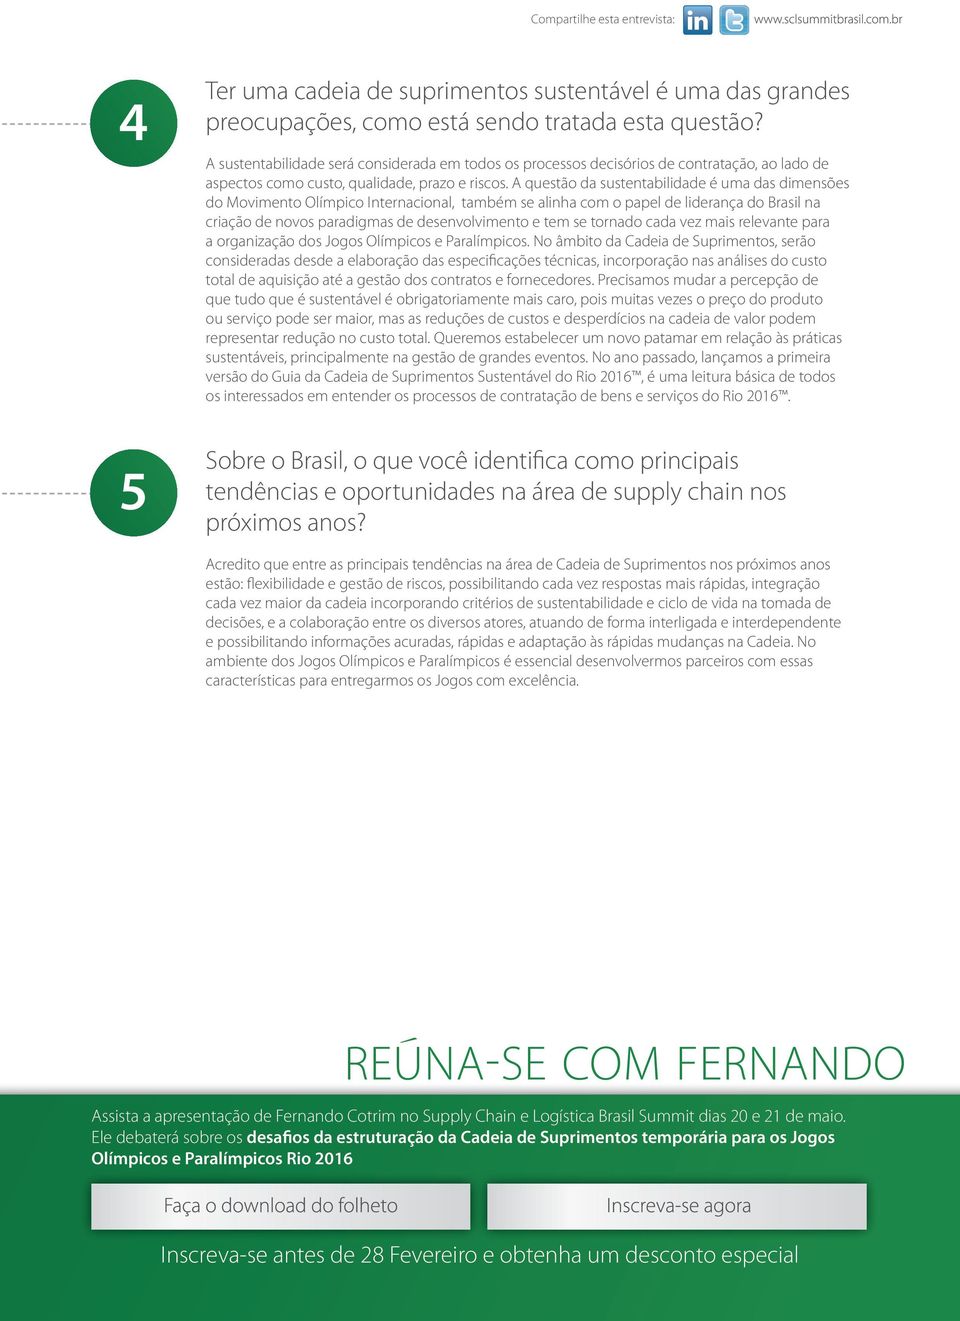 A questão da sustentabilidade é uma das dimensões do Movimento Olímpico Internacional, também se alinha com o papel de liderança do Brasil na criação de novos paradigmas de desenvolvimento e tem se